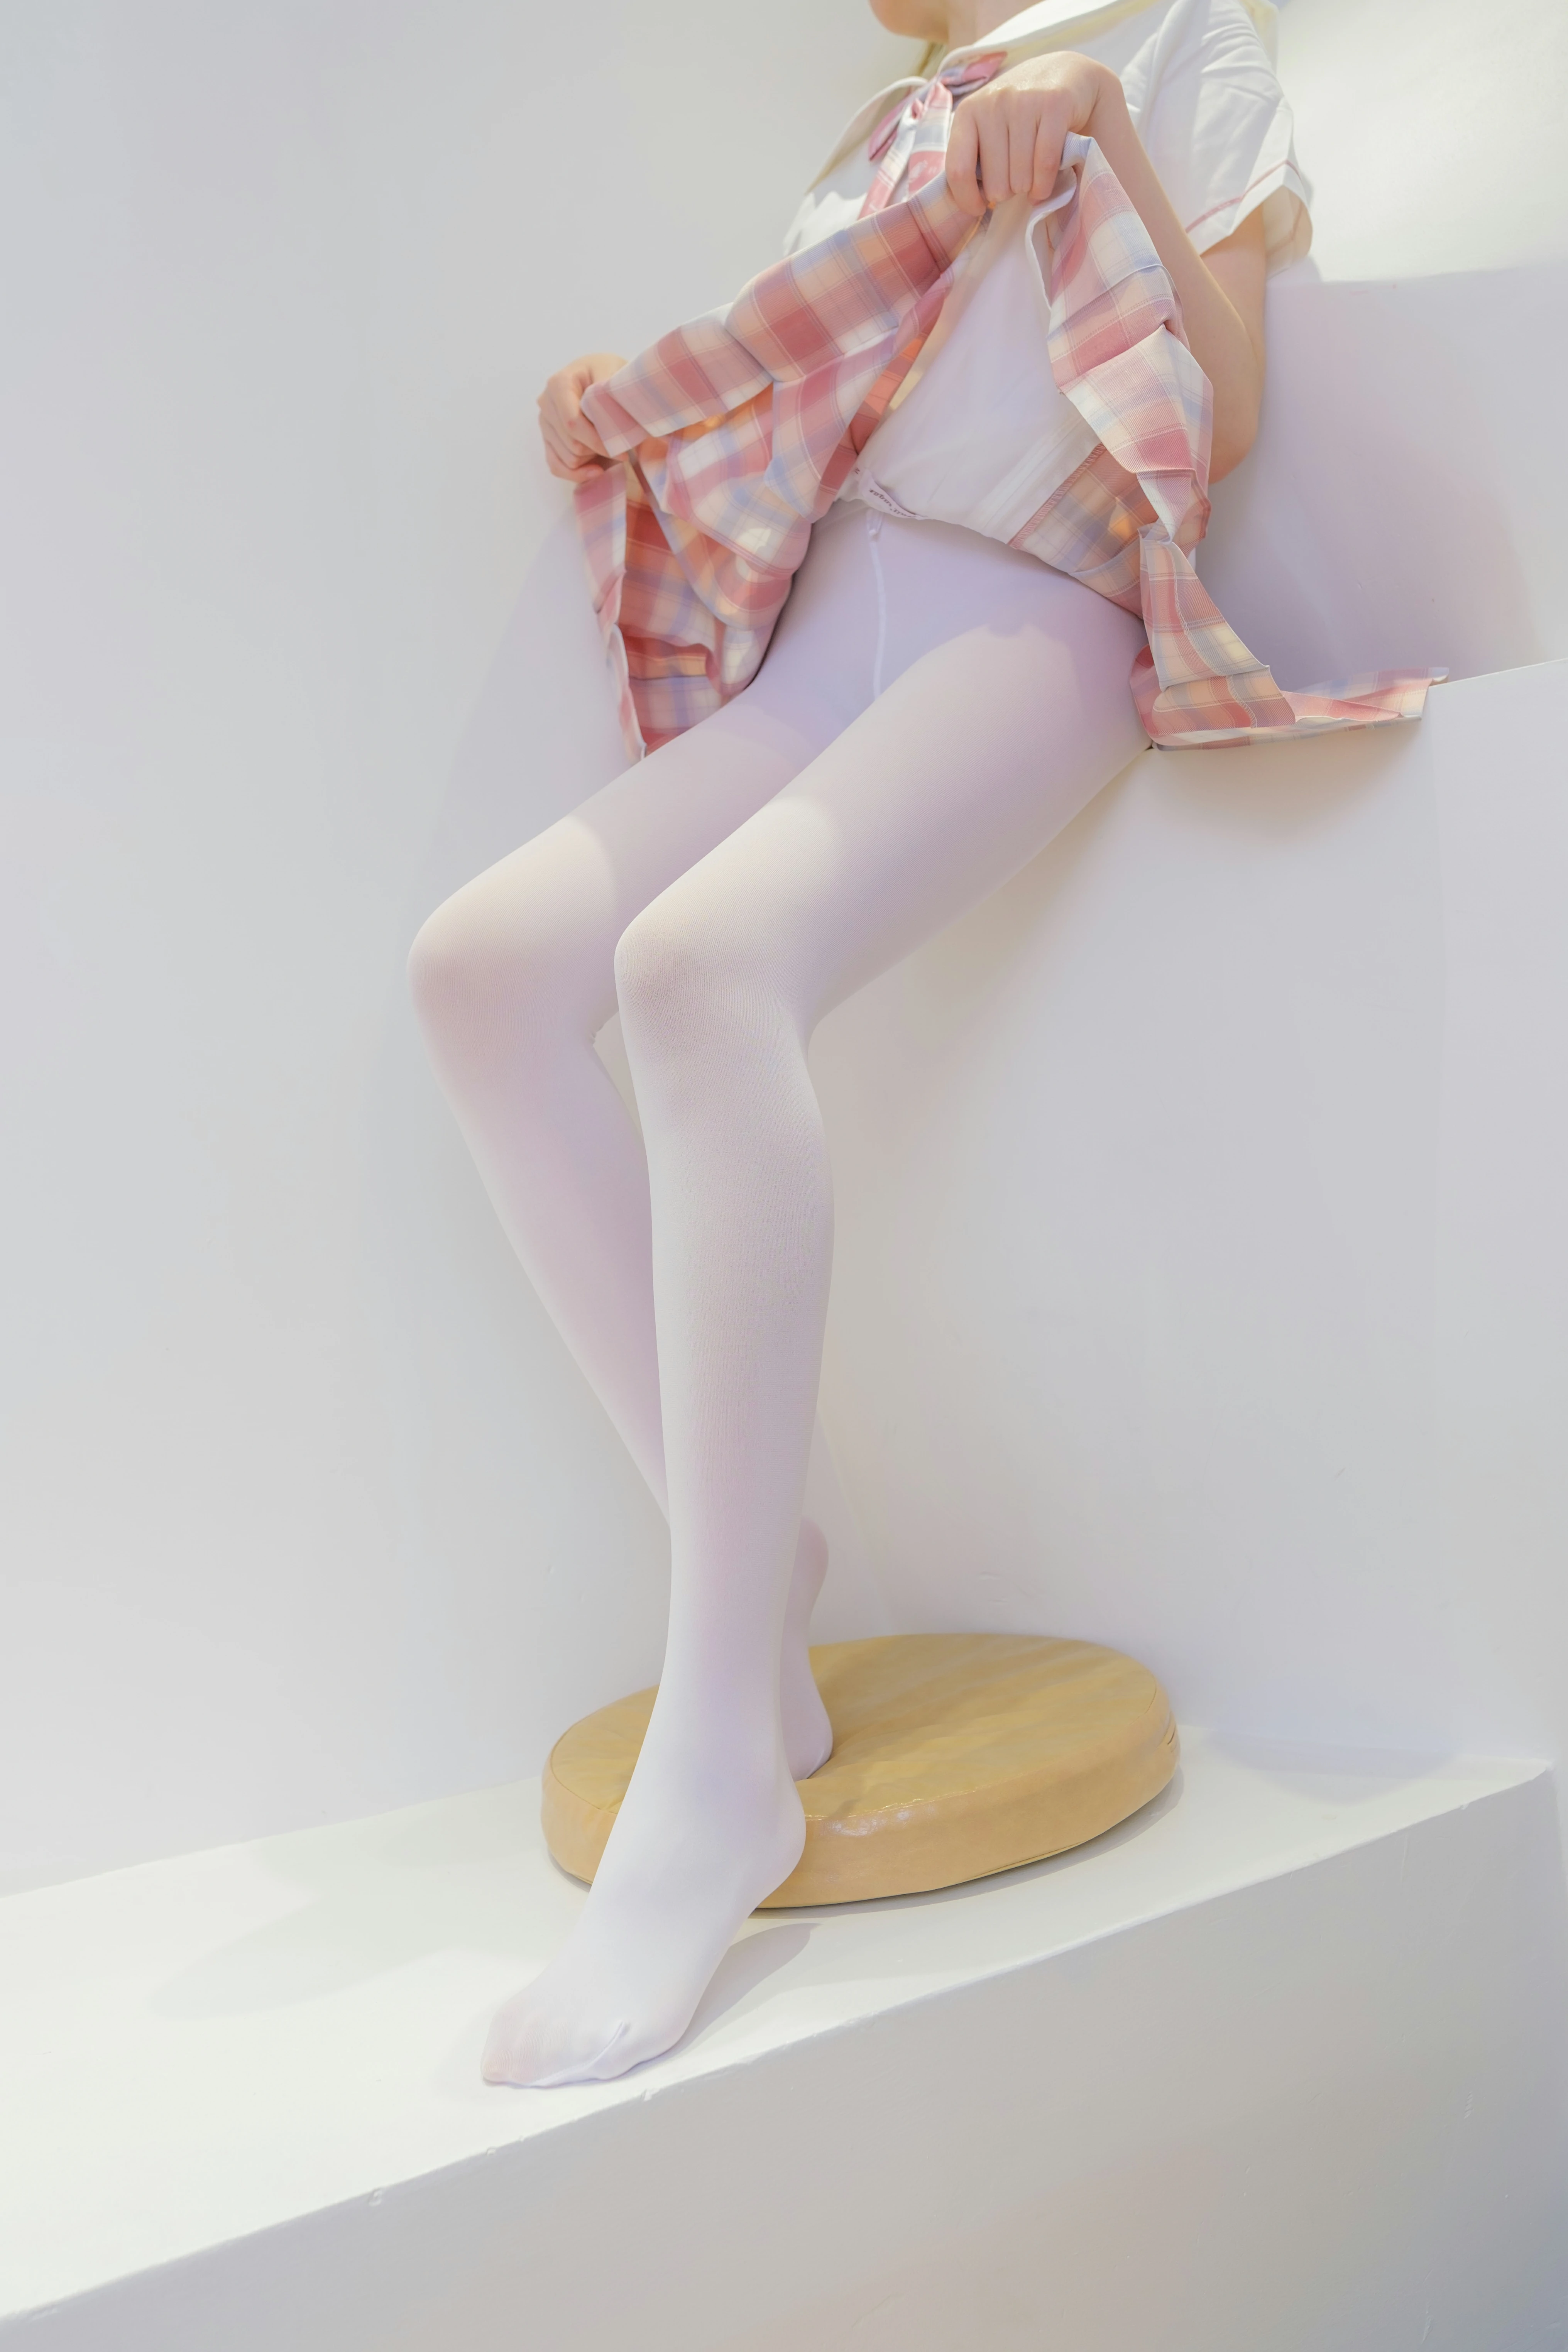 [森萝财团]GZAY3 酒店JK制服小萝莉 白色衬衫与粉色短裙加白色丝袜美腿性感私房写真集,0011